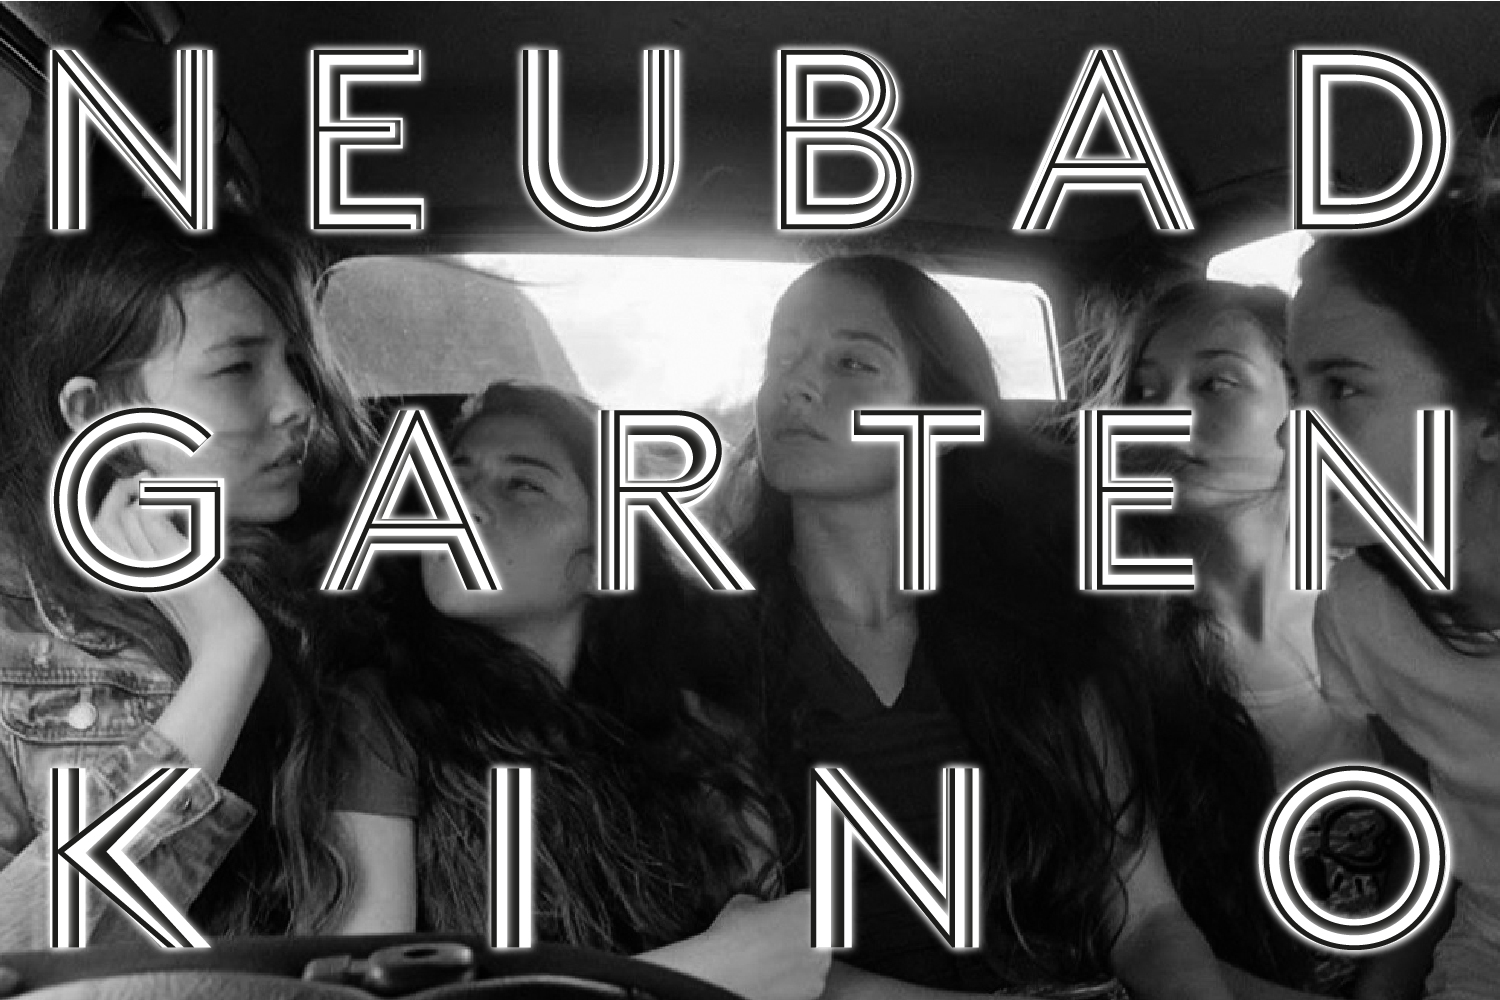 Schriftzug Neubad Gartenkino über Filmplakat. 5 junge Frauen auf der Rückbank eines Autos, schwarzweiss